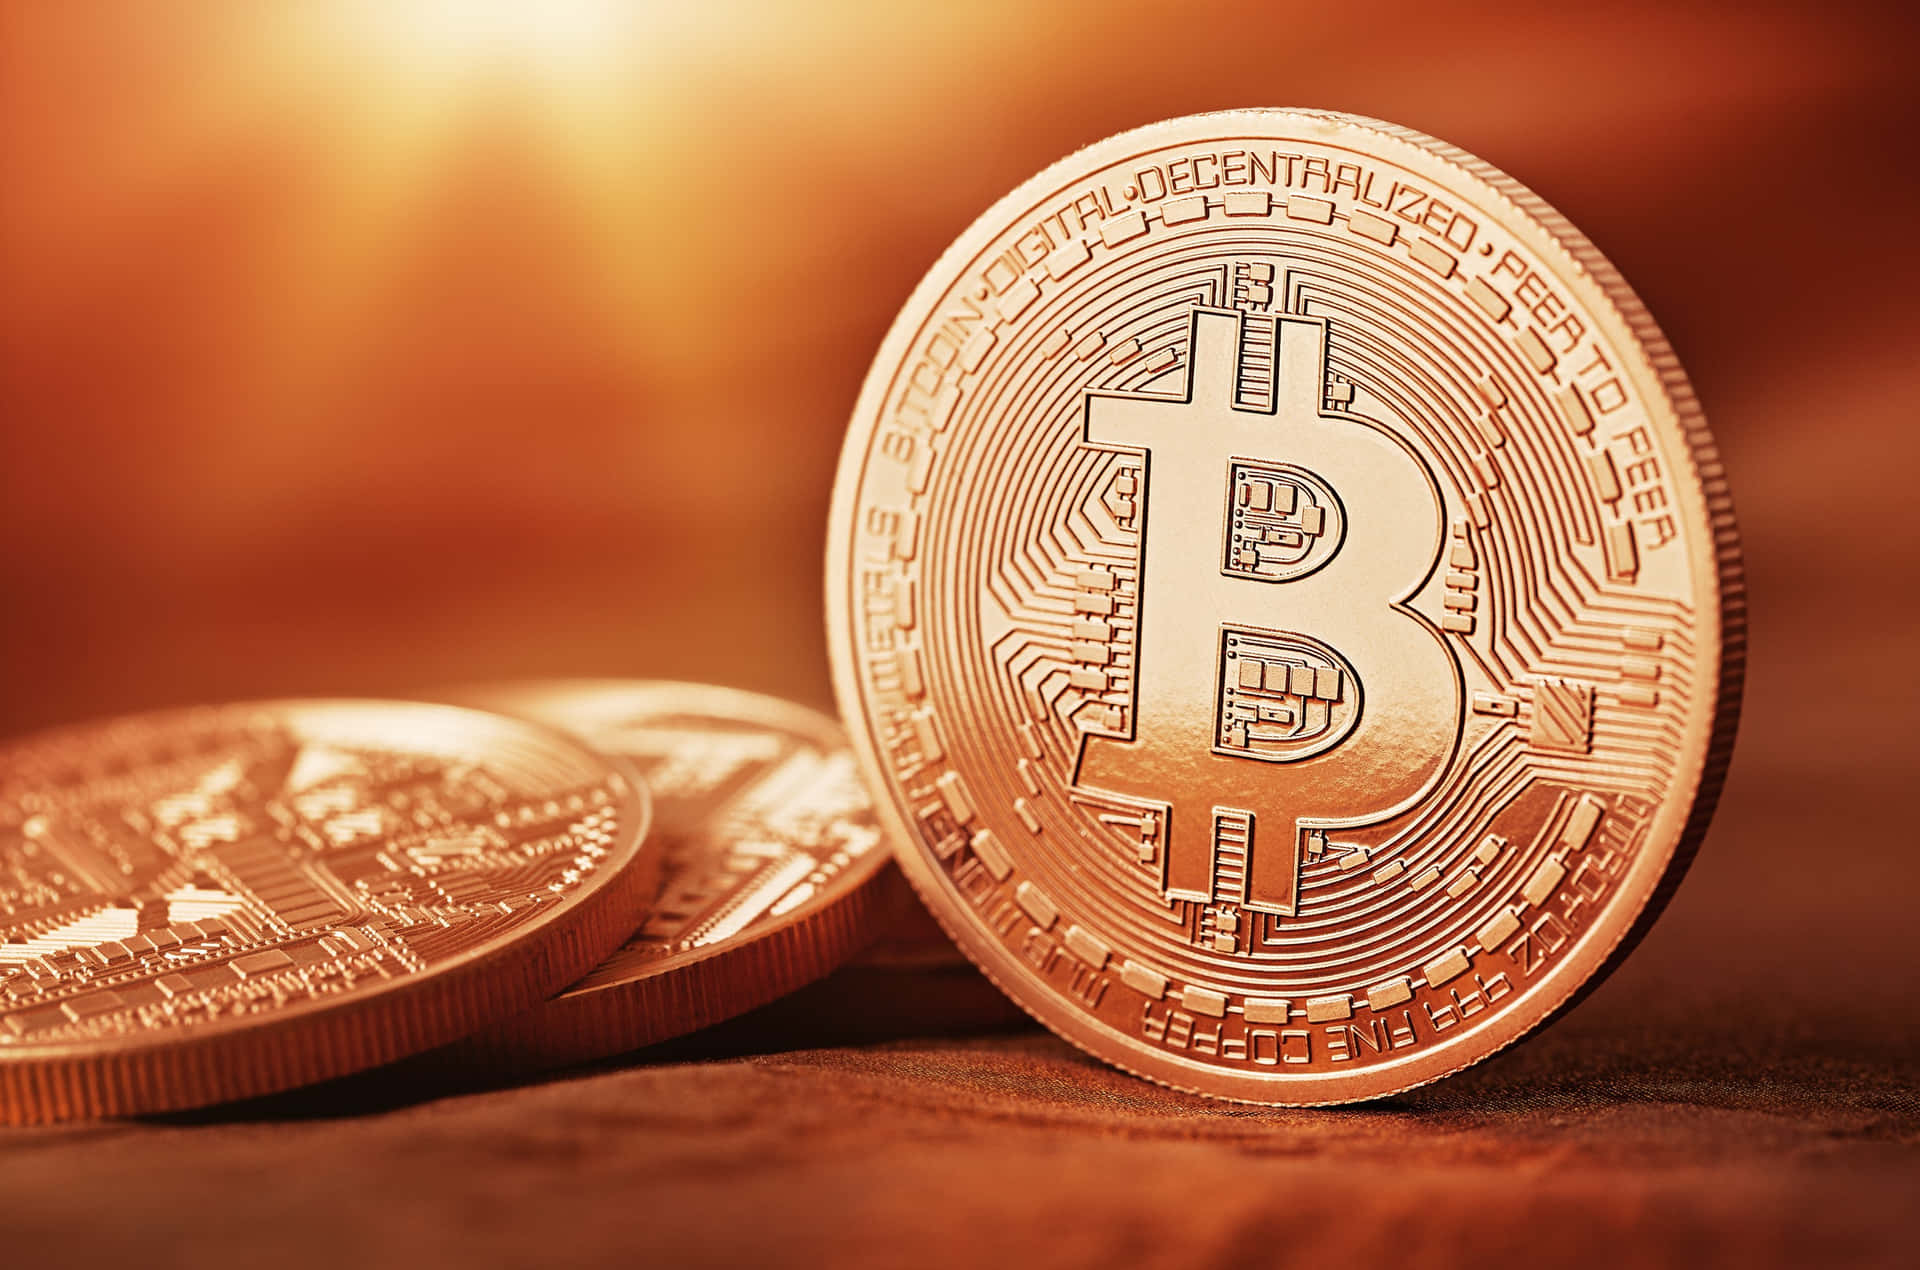 A Shiny Future With Bitcoin